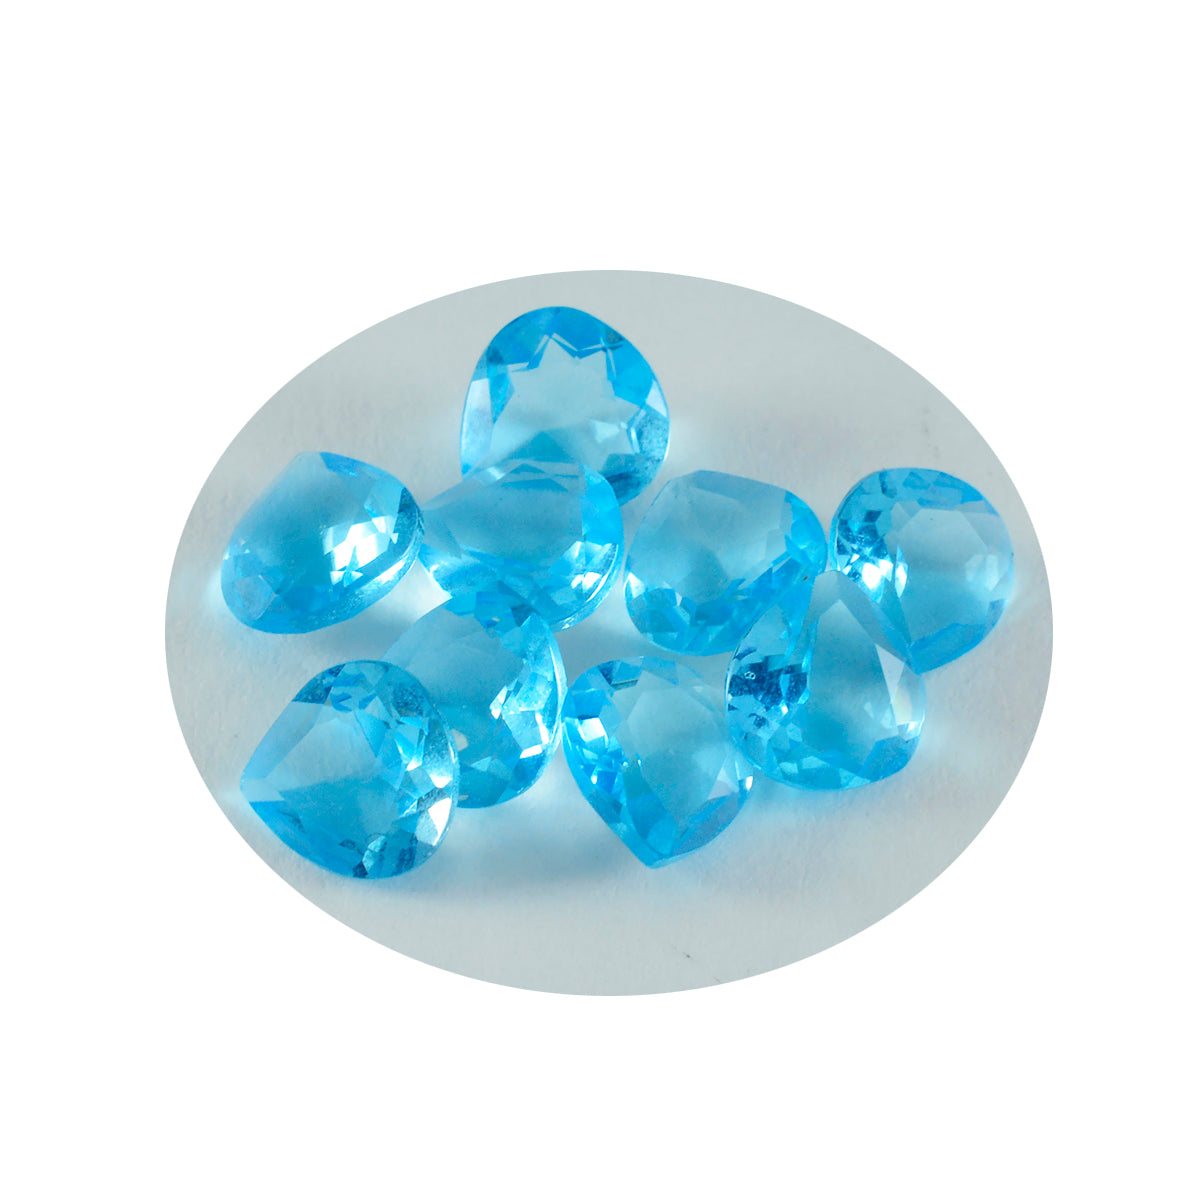 riyogems 1шт синий топаз cz ограненный 5x5 мм в форме сердца красивый качественный камень